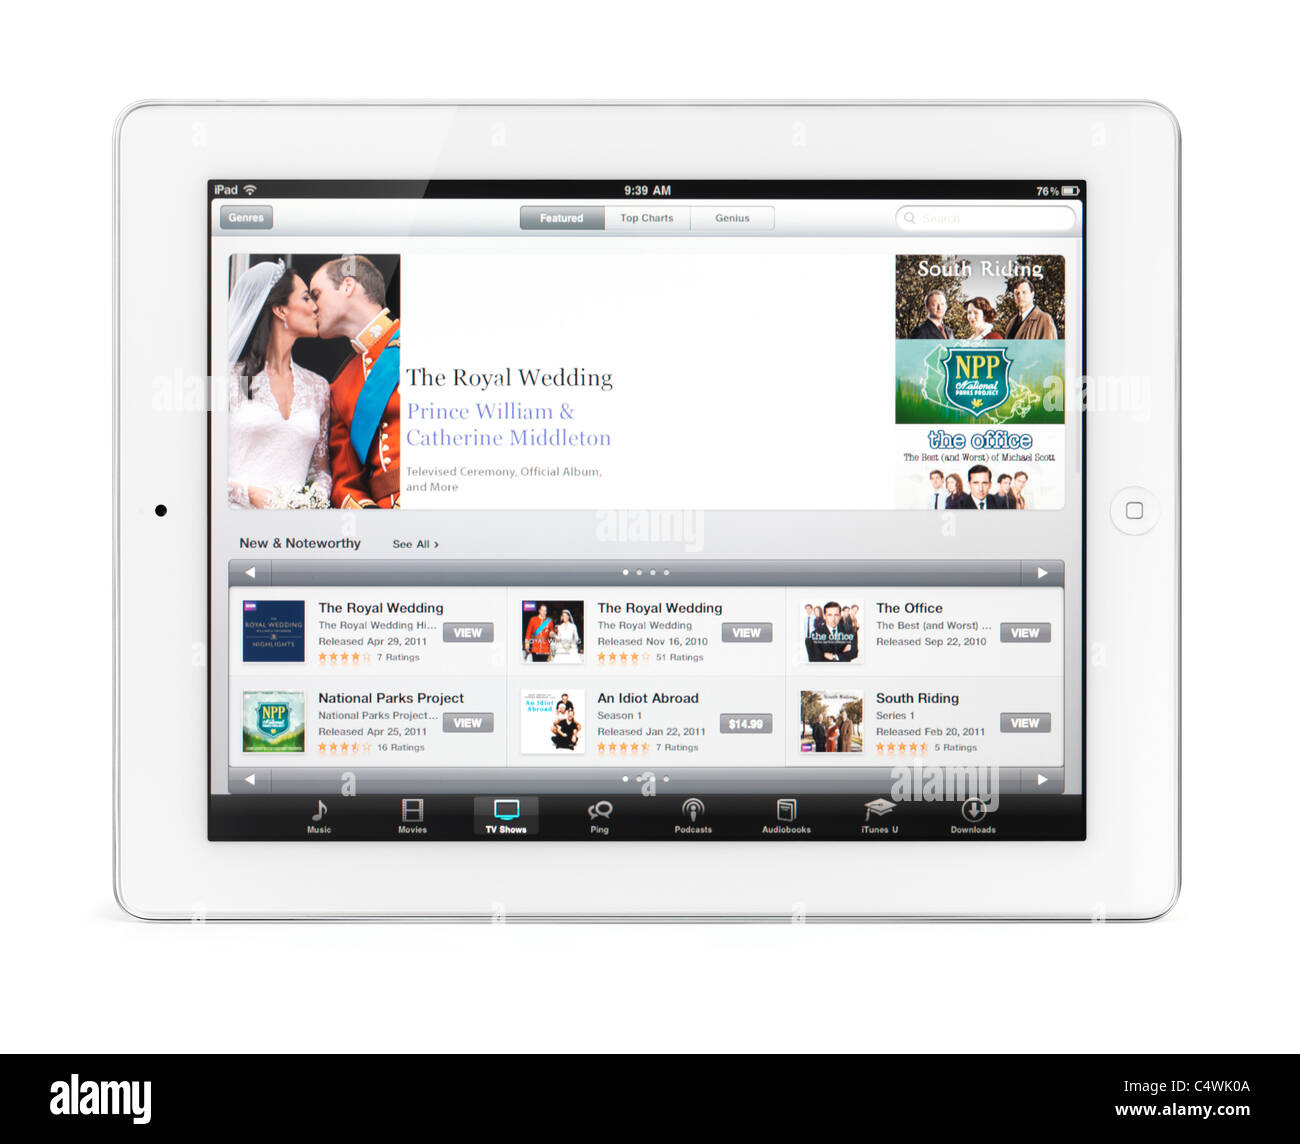 Tablette Apple iPad 2 ordinateur avec iTunes des émissions de télévision avec le mariage royal sur son afficheur. Isolé sur fond blanc. Banque D'Images